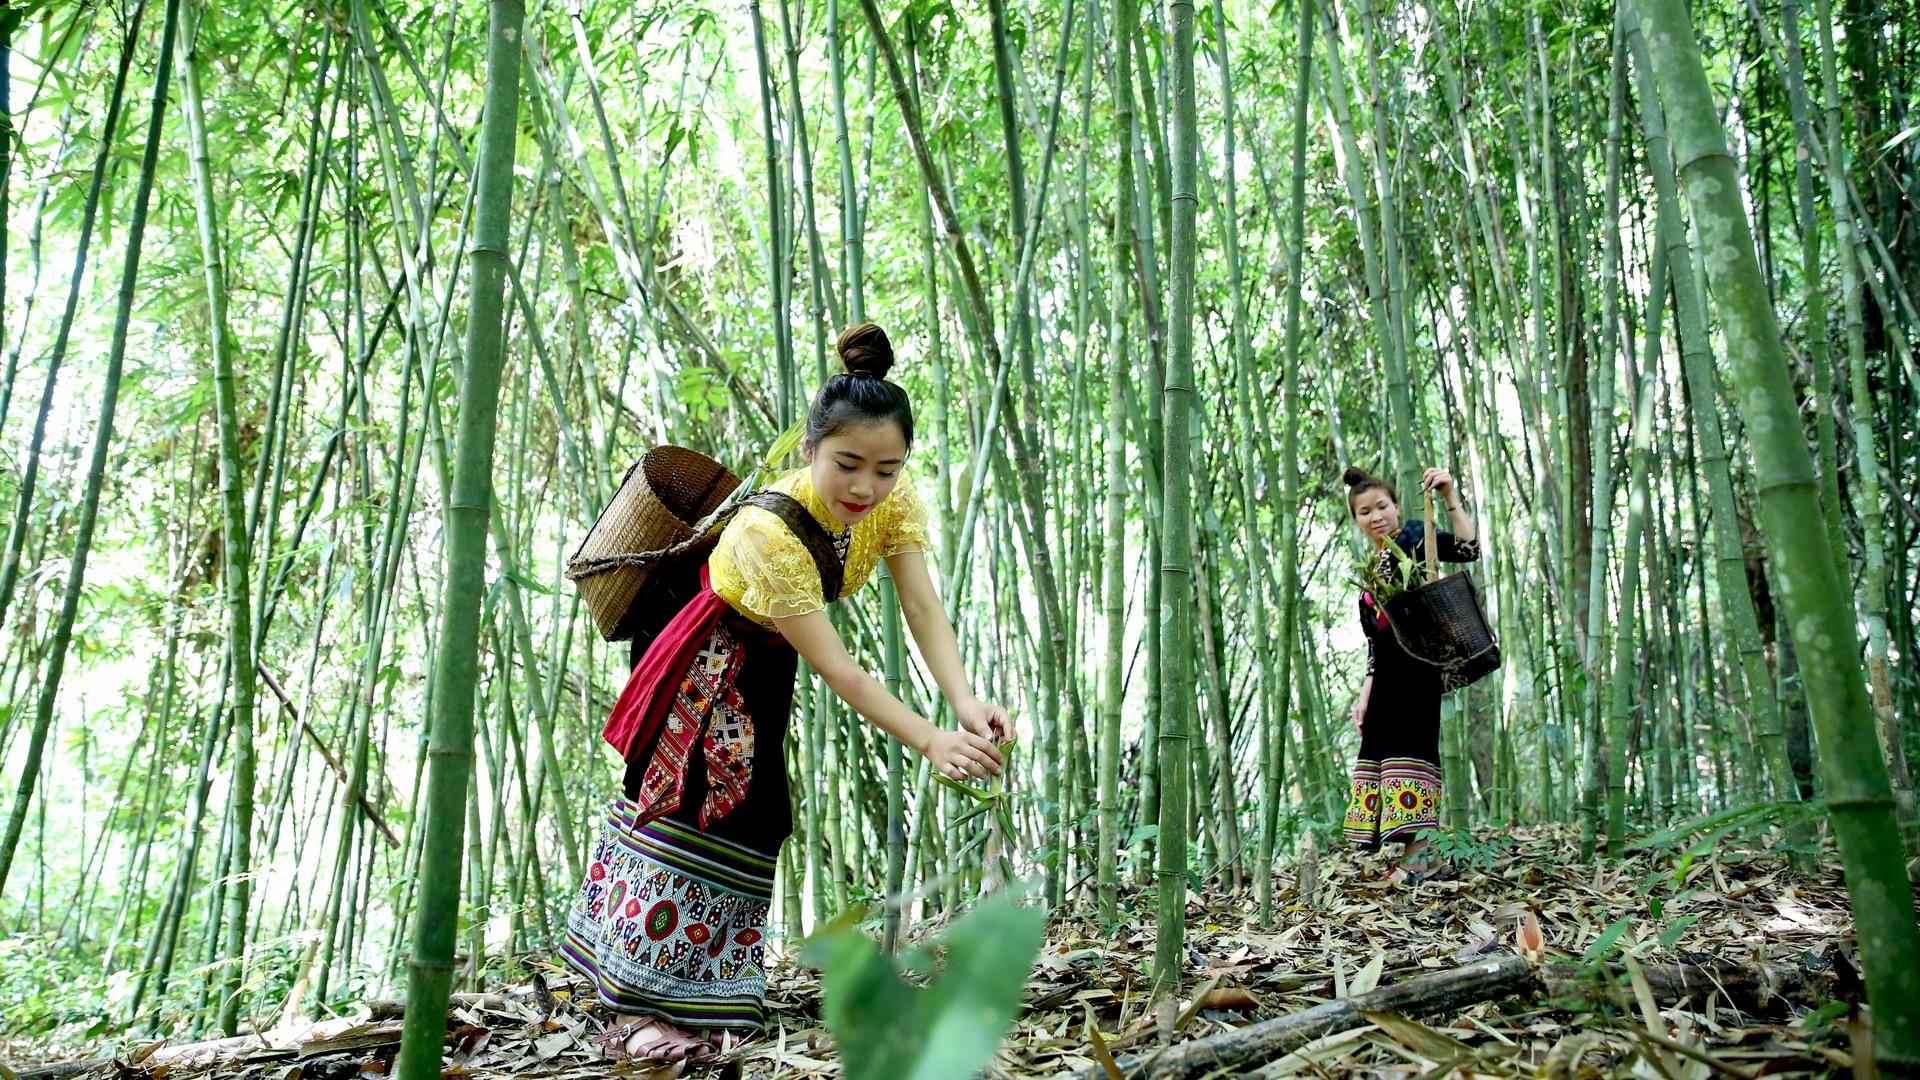 Nhiều người đi qua khu rừng vẫn truyền tai nhau rằng, khu rừng này đẹp hơn cả Trà Sơn Trúc - một trong những phim trường nổi tiếng của Trung Quốc  Những người phụ nữ Thái ở trong vùng cũng thường xuyên lui tới khu rừng để hái măng. Ảnh: Hồ Phương.